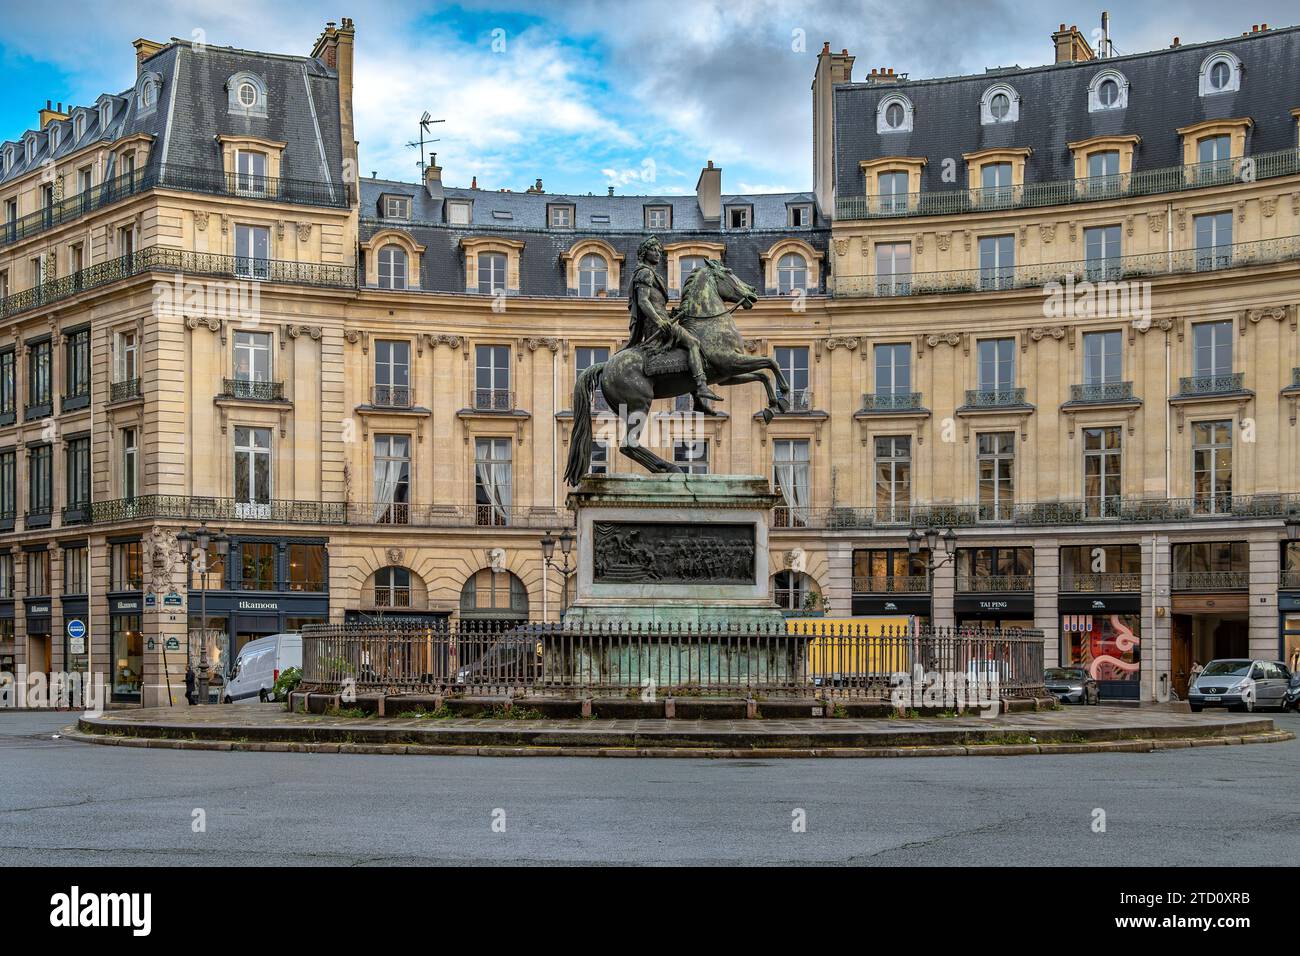 Place des victoires, la première place circulaire de son genre et construite autour d'une statue en l'honneur du roi Louis XIV, Paris, France Banque D'Images